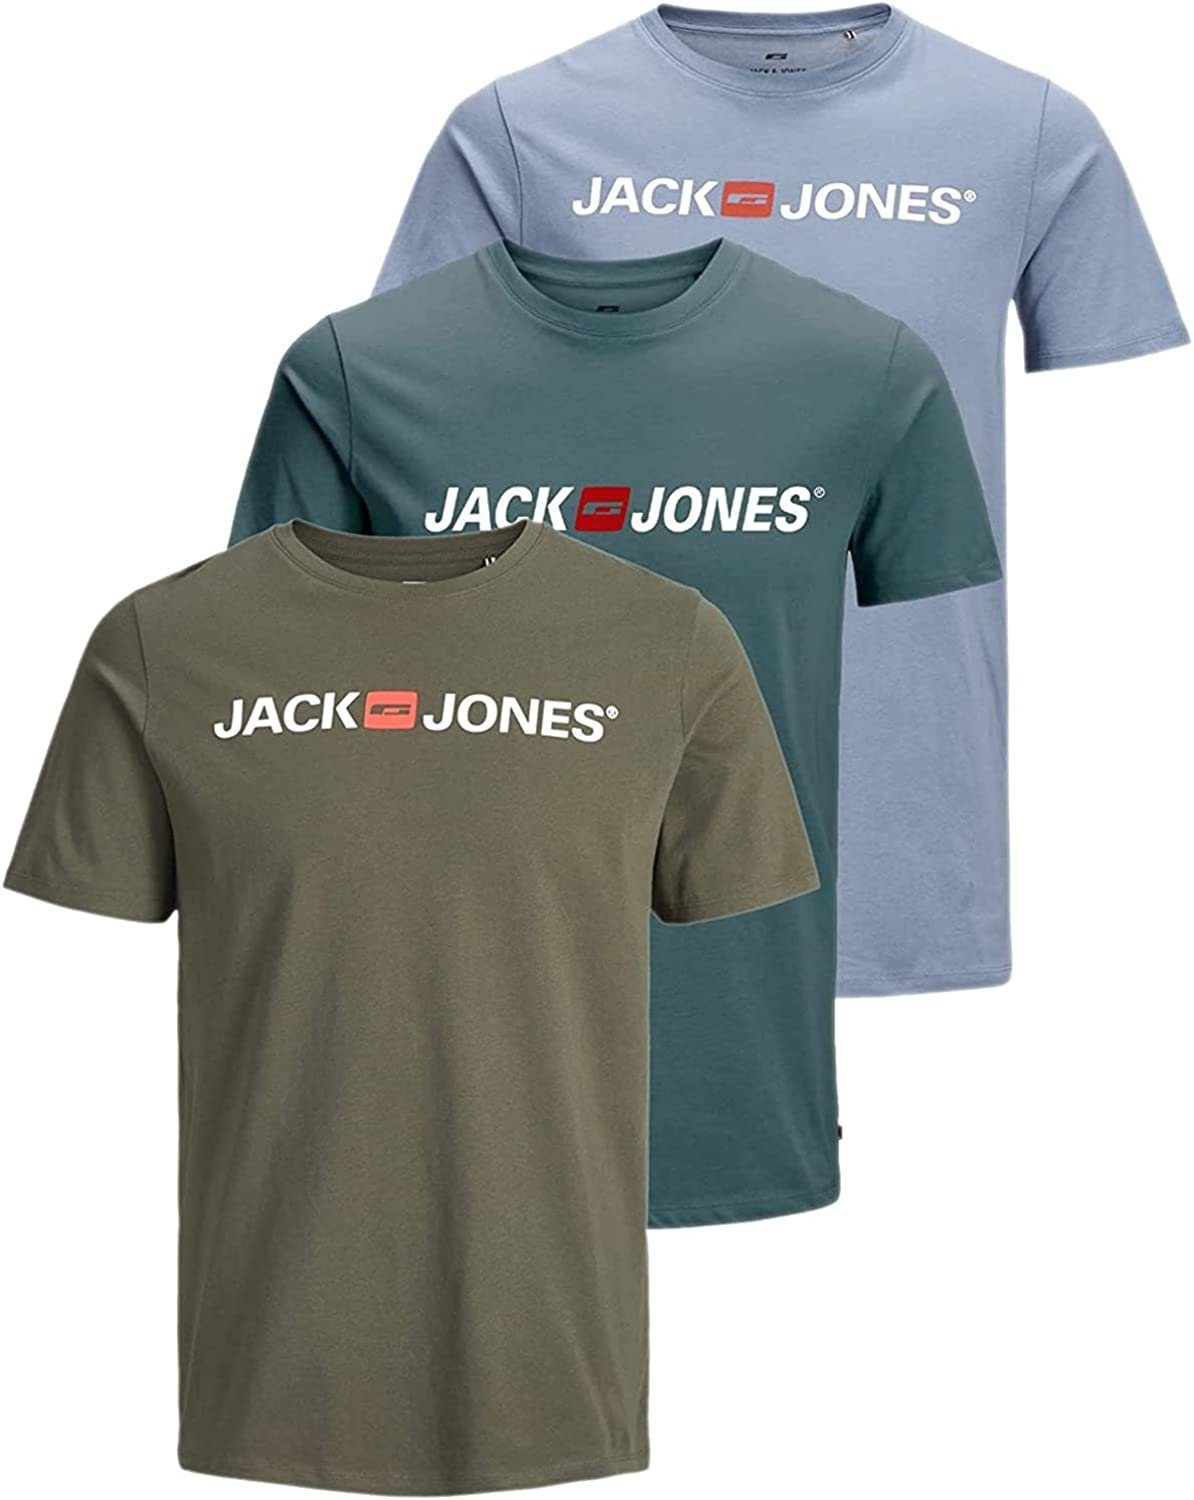 Jack & Jones T-Shirt Stilvolles Slim-Fit Shirt mit Printdruck (3er-Pack) bequemes Oberteil aus Baumwolle, Größe 3XL